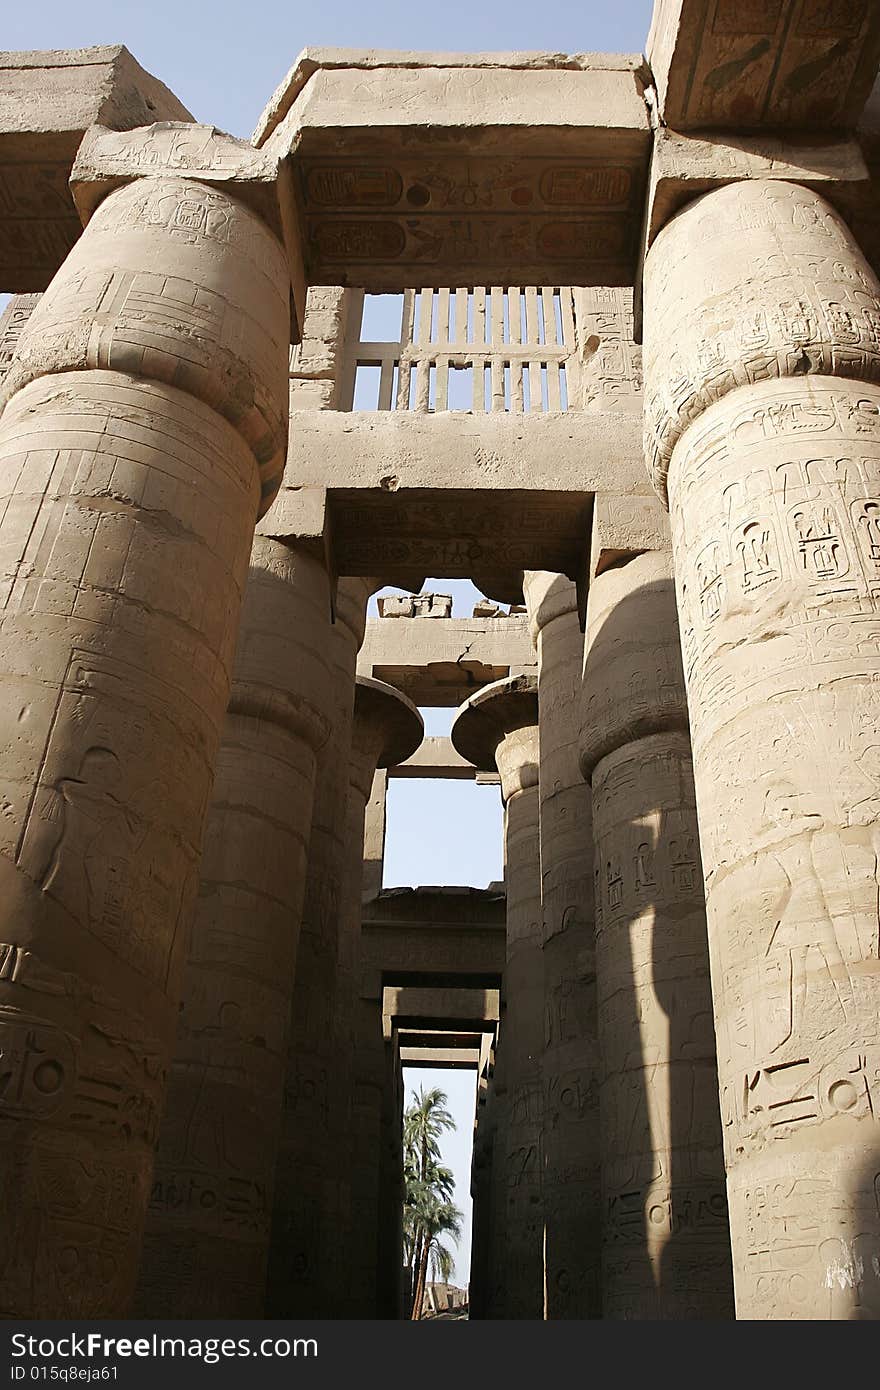 Columns of karnak temple, luxor, egypt, africa. Columns of karnak temple, luxor, egypt, africa